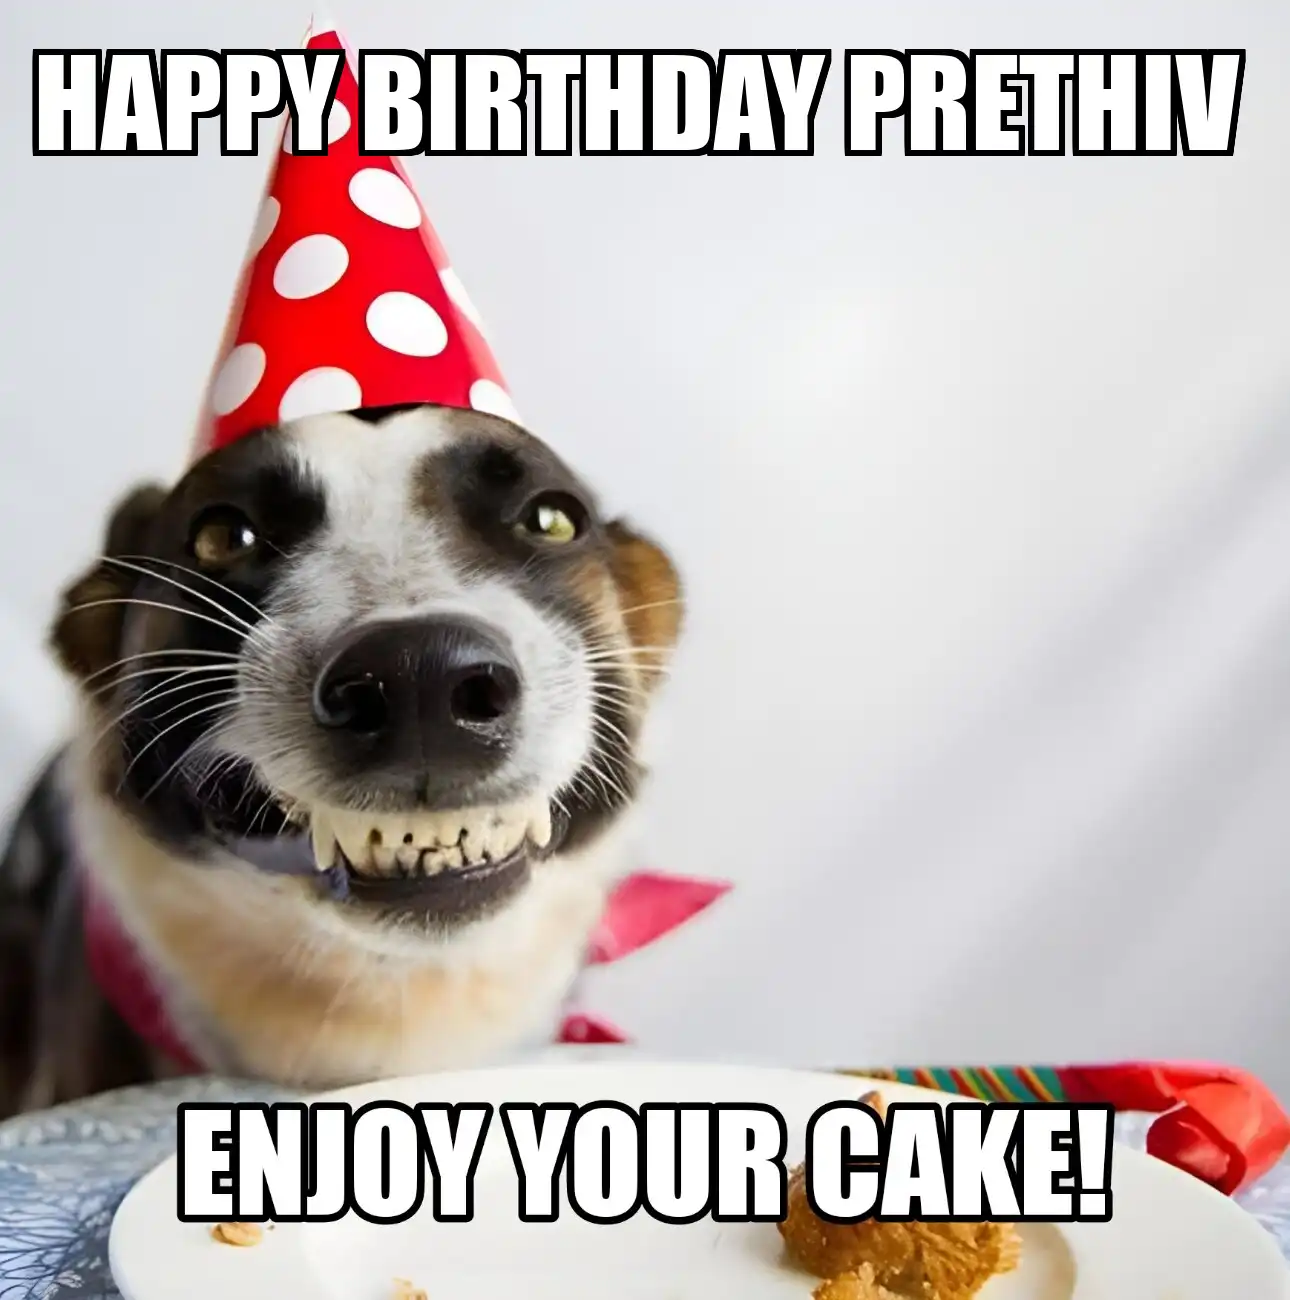 Happy Birthday Prethiv Enjoy Your Cake Dog Meme